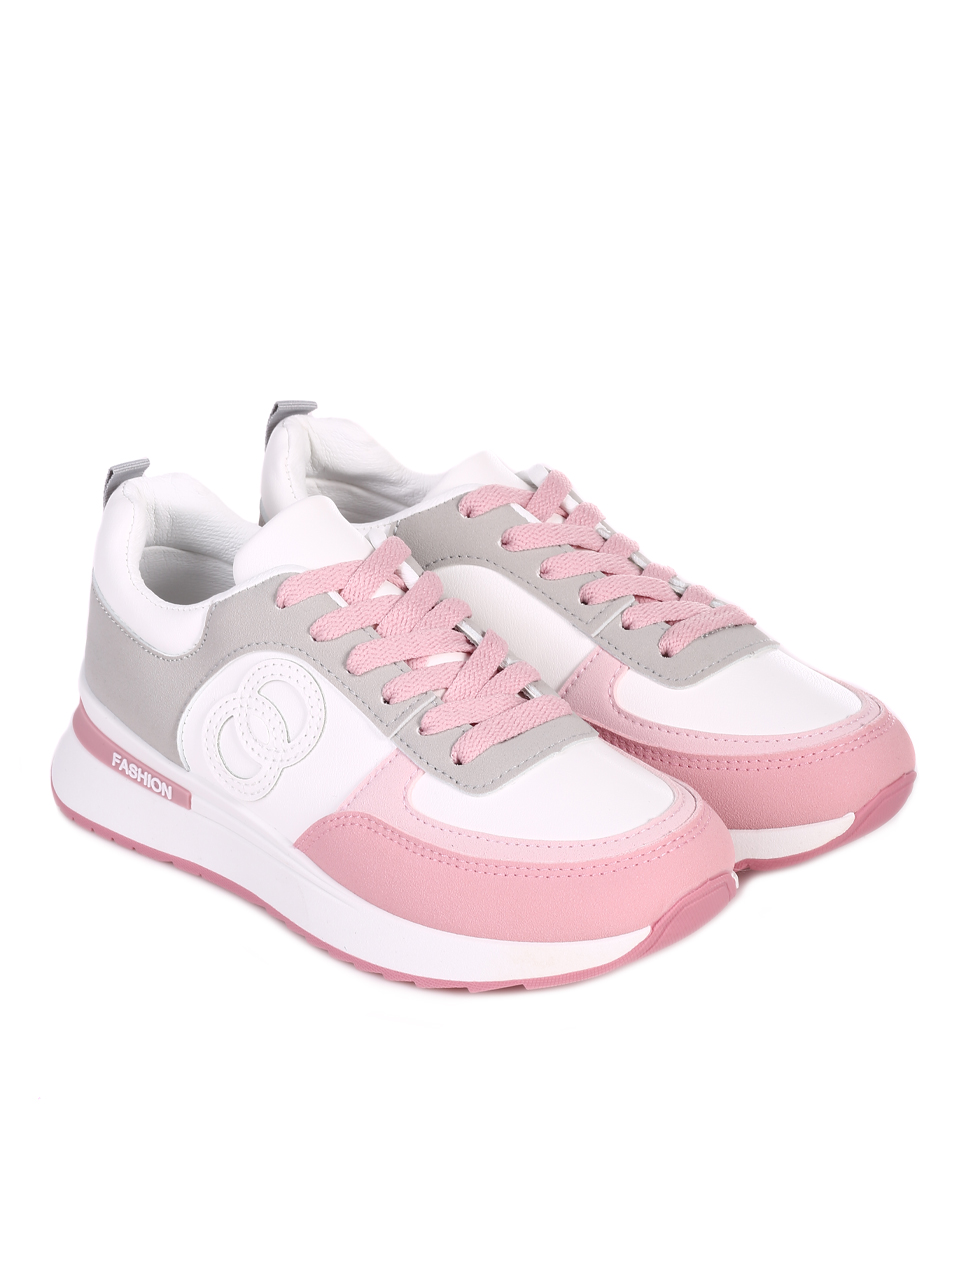 Ежедневни дамски комфортни обувки на платформа 3U-23058 white/pink